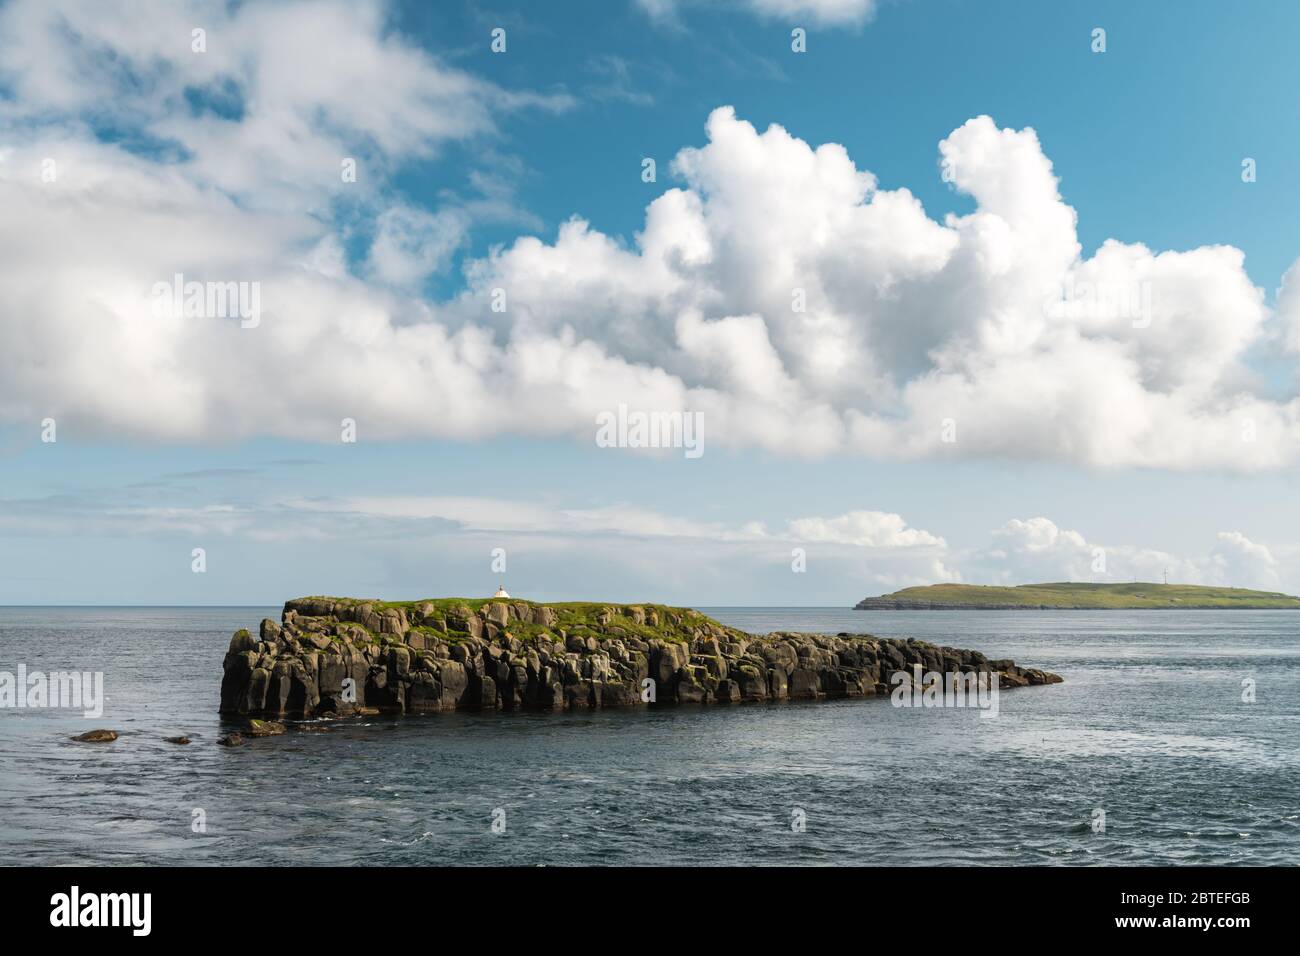 Vista estiva delle piccole isole alla periferia della città di Torshavn, capitale delle Isole Faroe, isola di Streymoy, Danimarca. Fotografia di paesaggio Foto Stock